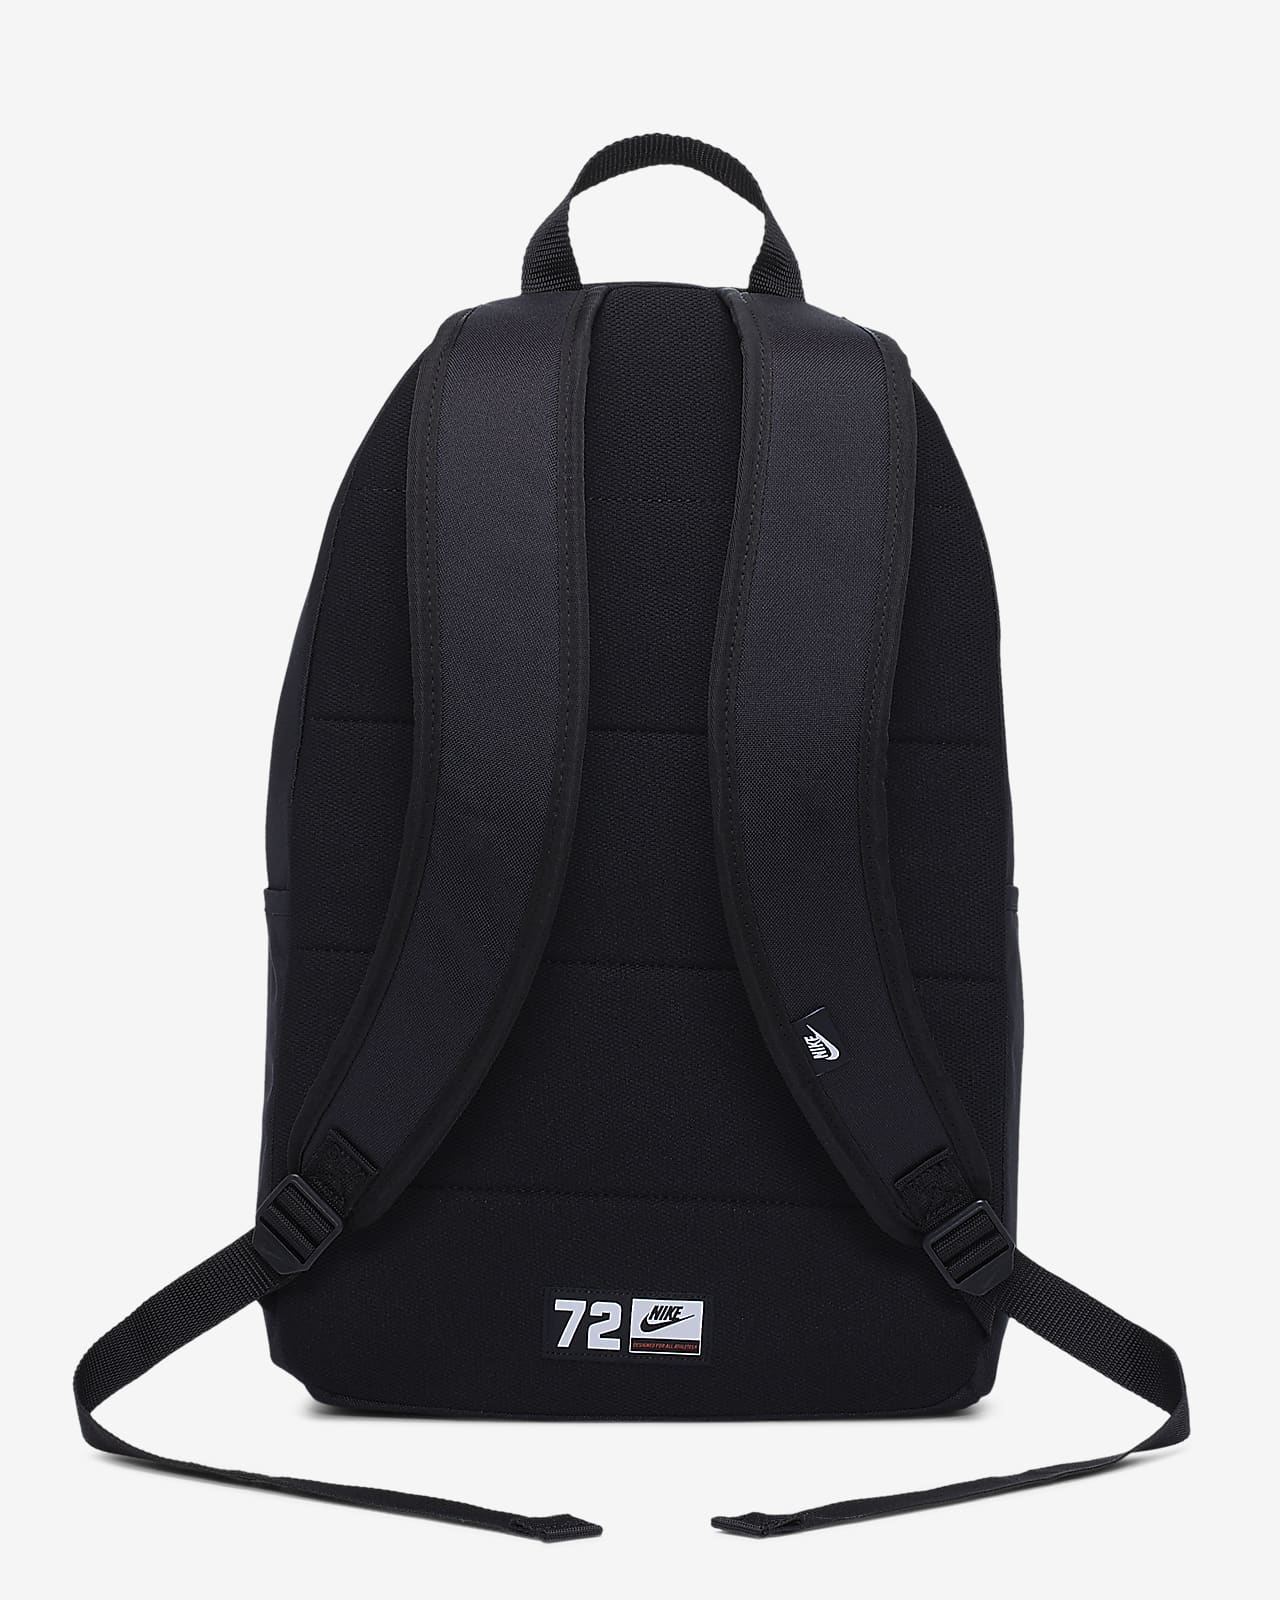 backpack nike black